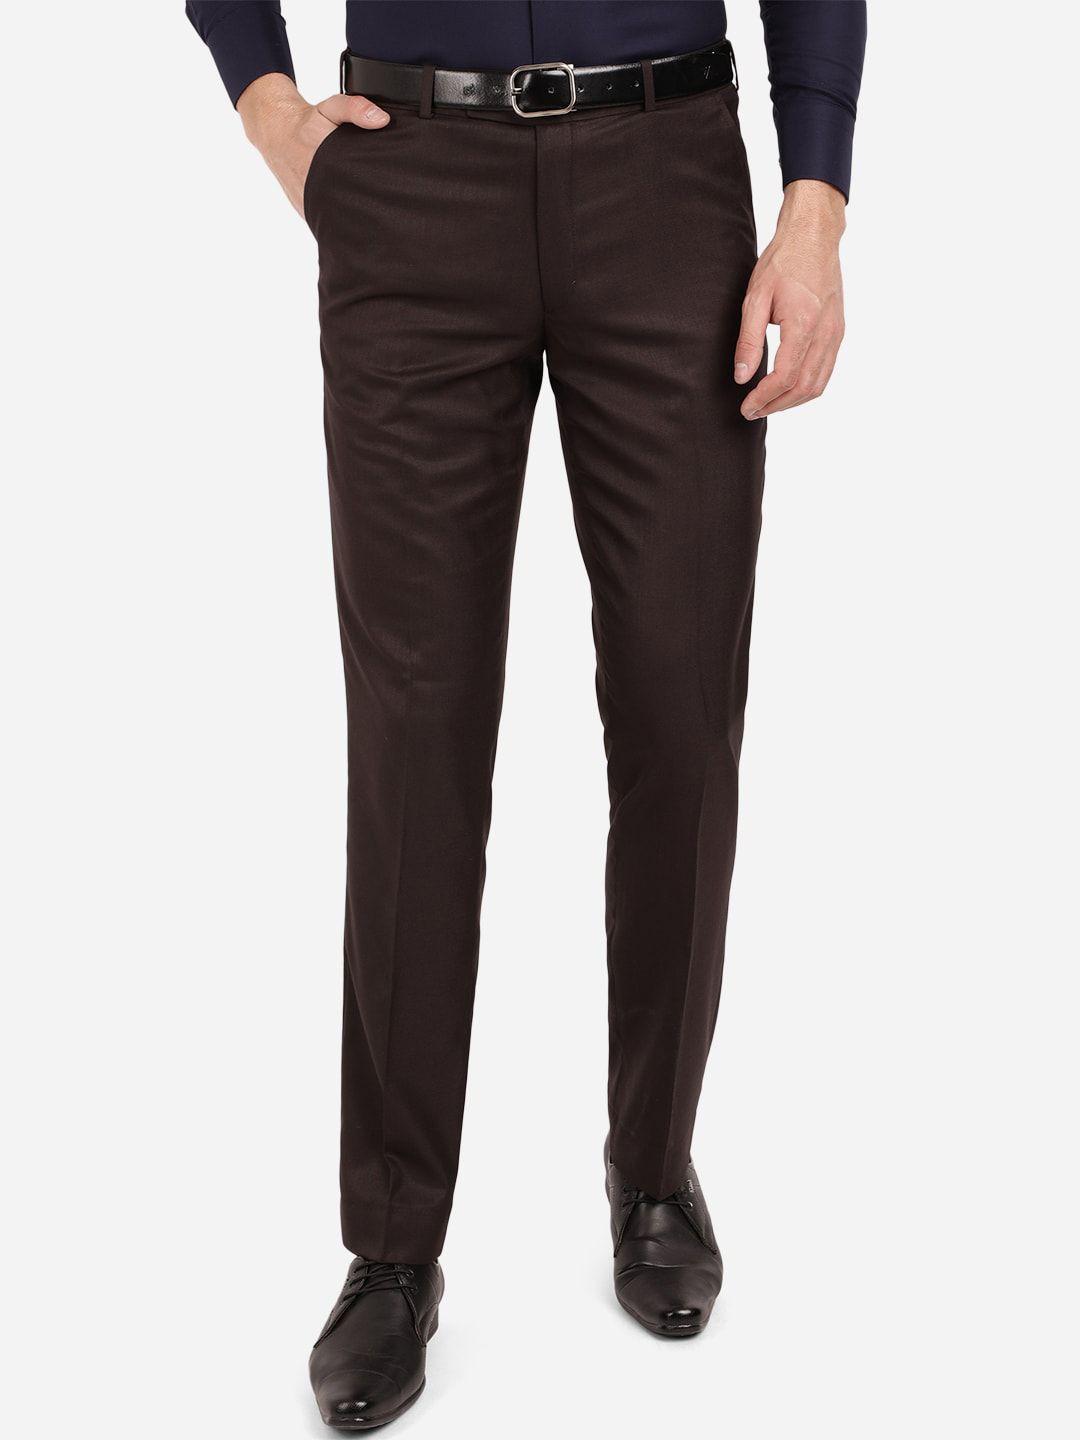 greenfibre-men-brown-classic-fit-formal-trouser